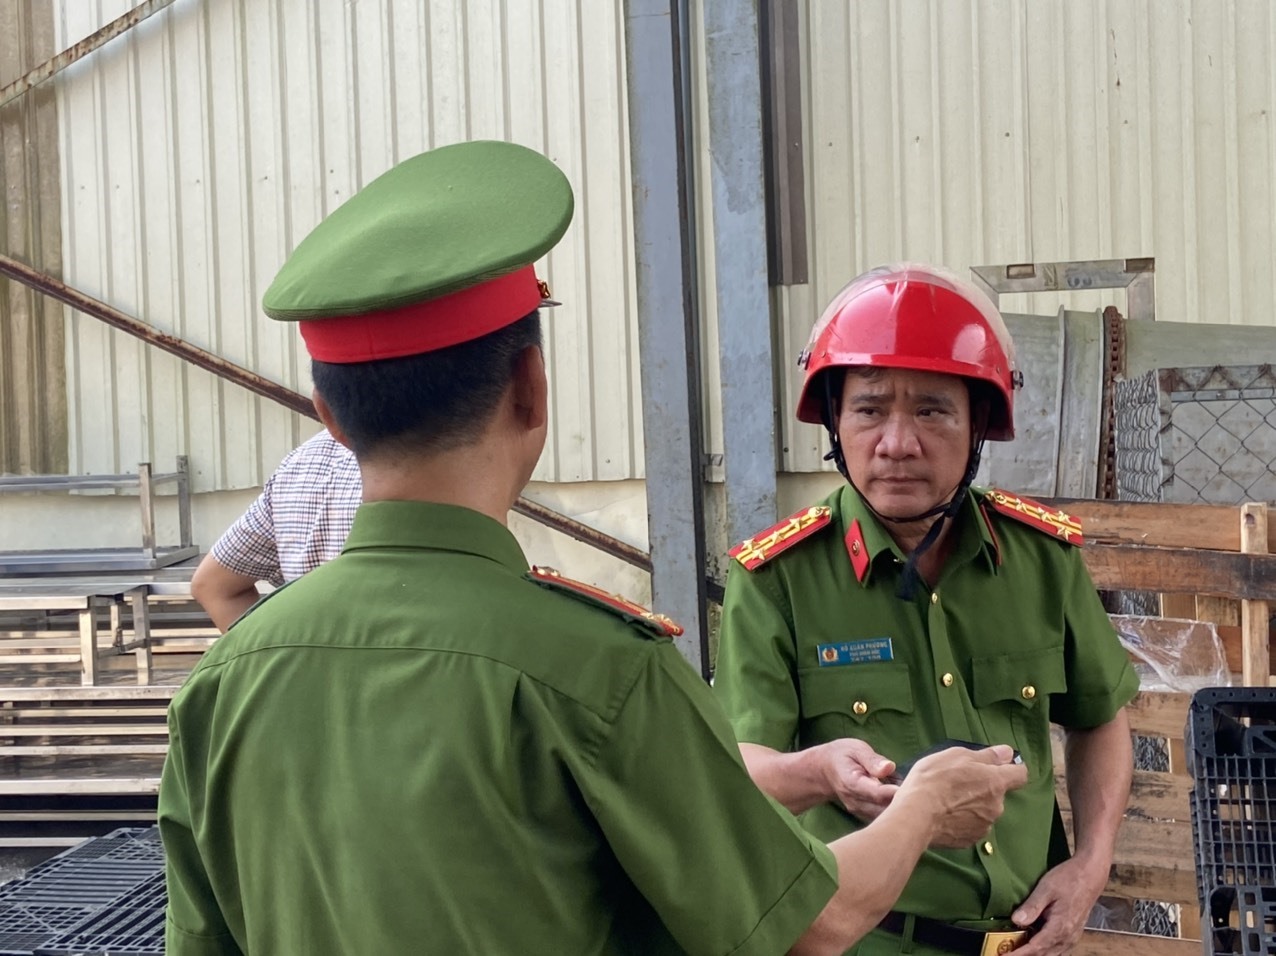 Đại tá Hồ Xuân Phương - Phó Giám đốc Công an tỉnh Thừa Thiên Huế trực tiếp có mặt tại hiện trường chỉ đạo các lực lượng khống chế vụ cháy.